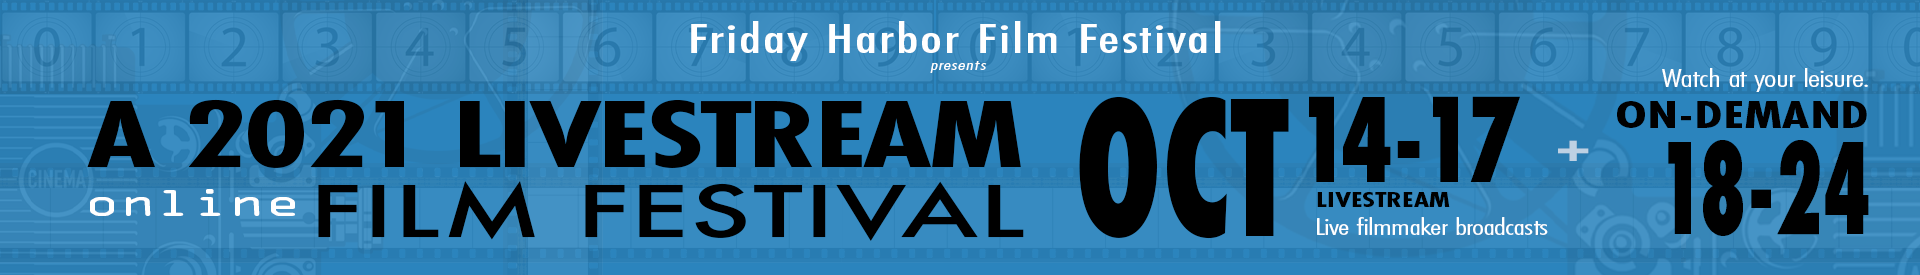 2021 Friday Harbor Film Festival